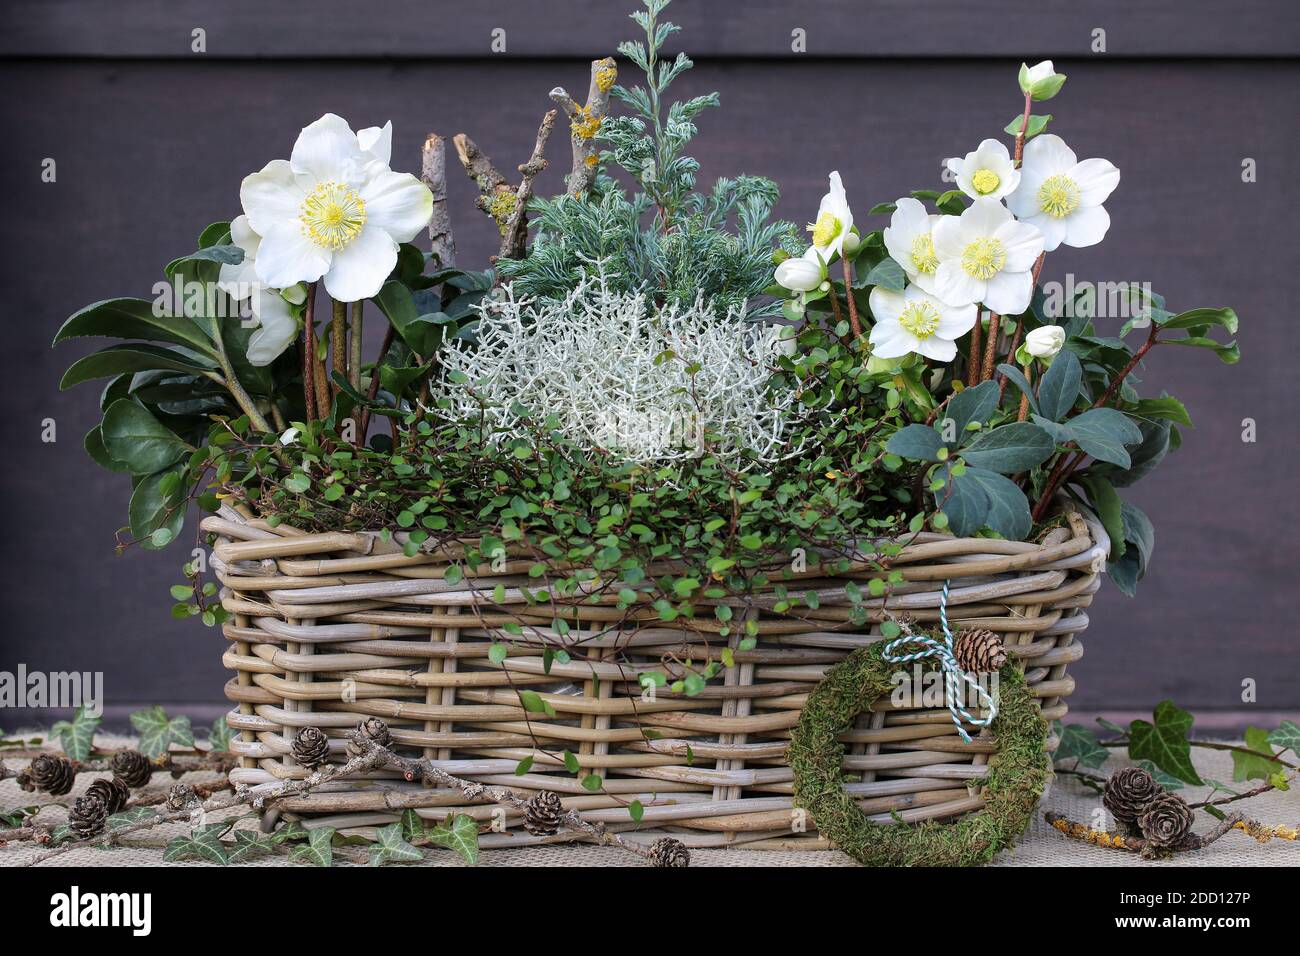 helleborus niger, coussin de brousse et muehlenbeckia dans le panier comme décoration de jardin d'hiver Banque D'Images